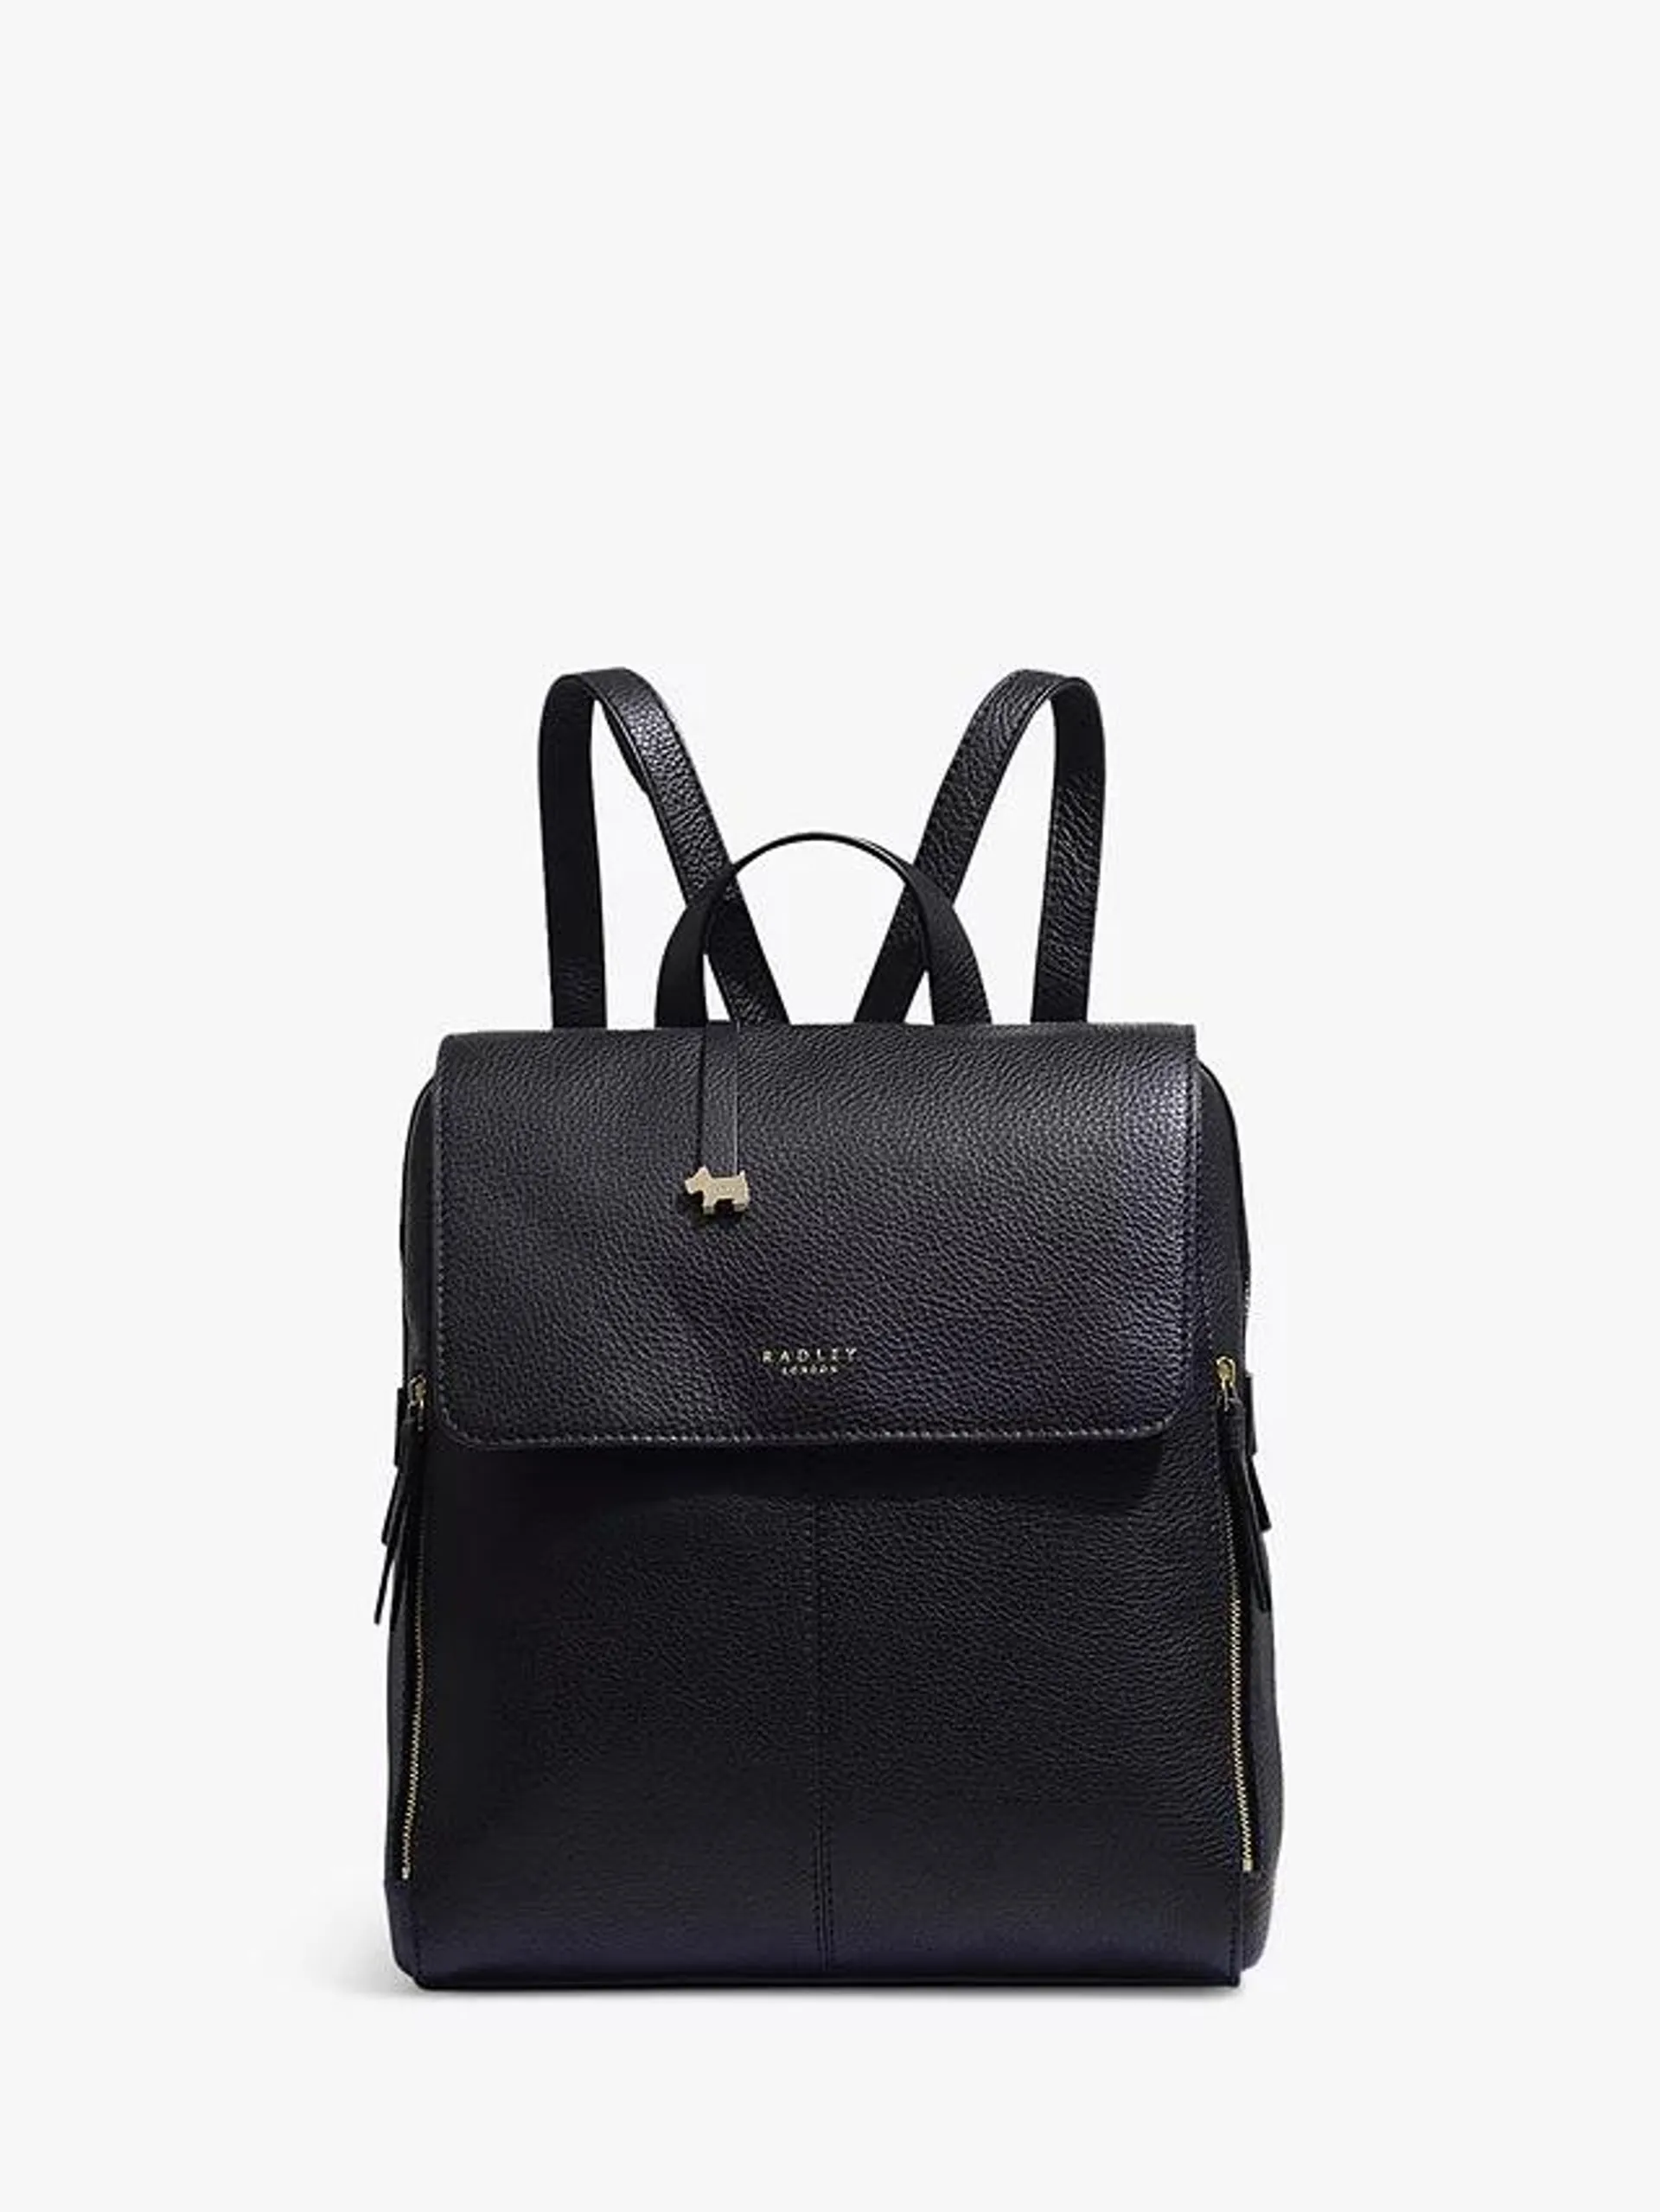 Radley Lorne Close Large Leather Backpack, Black